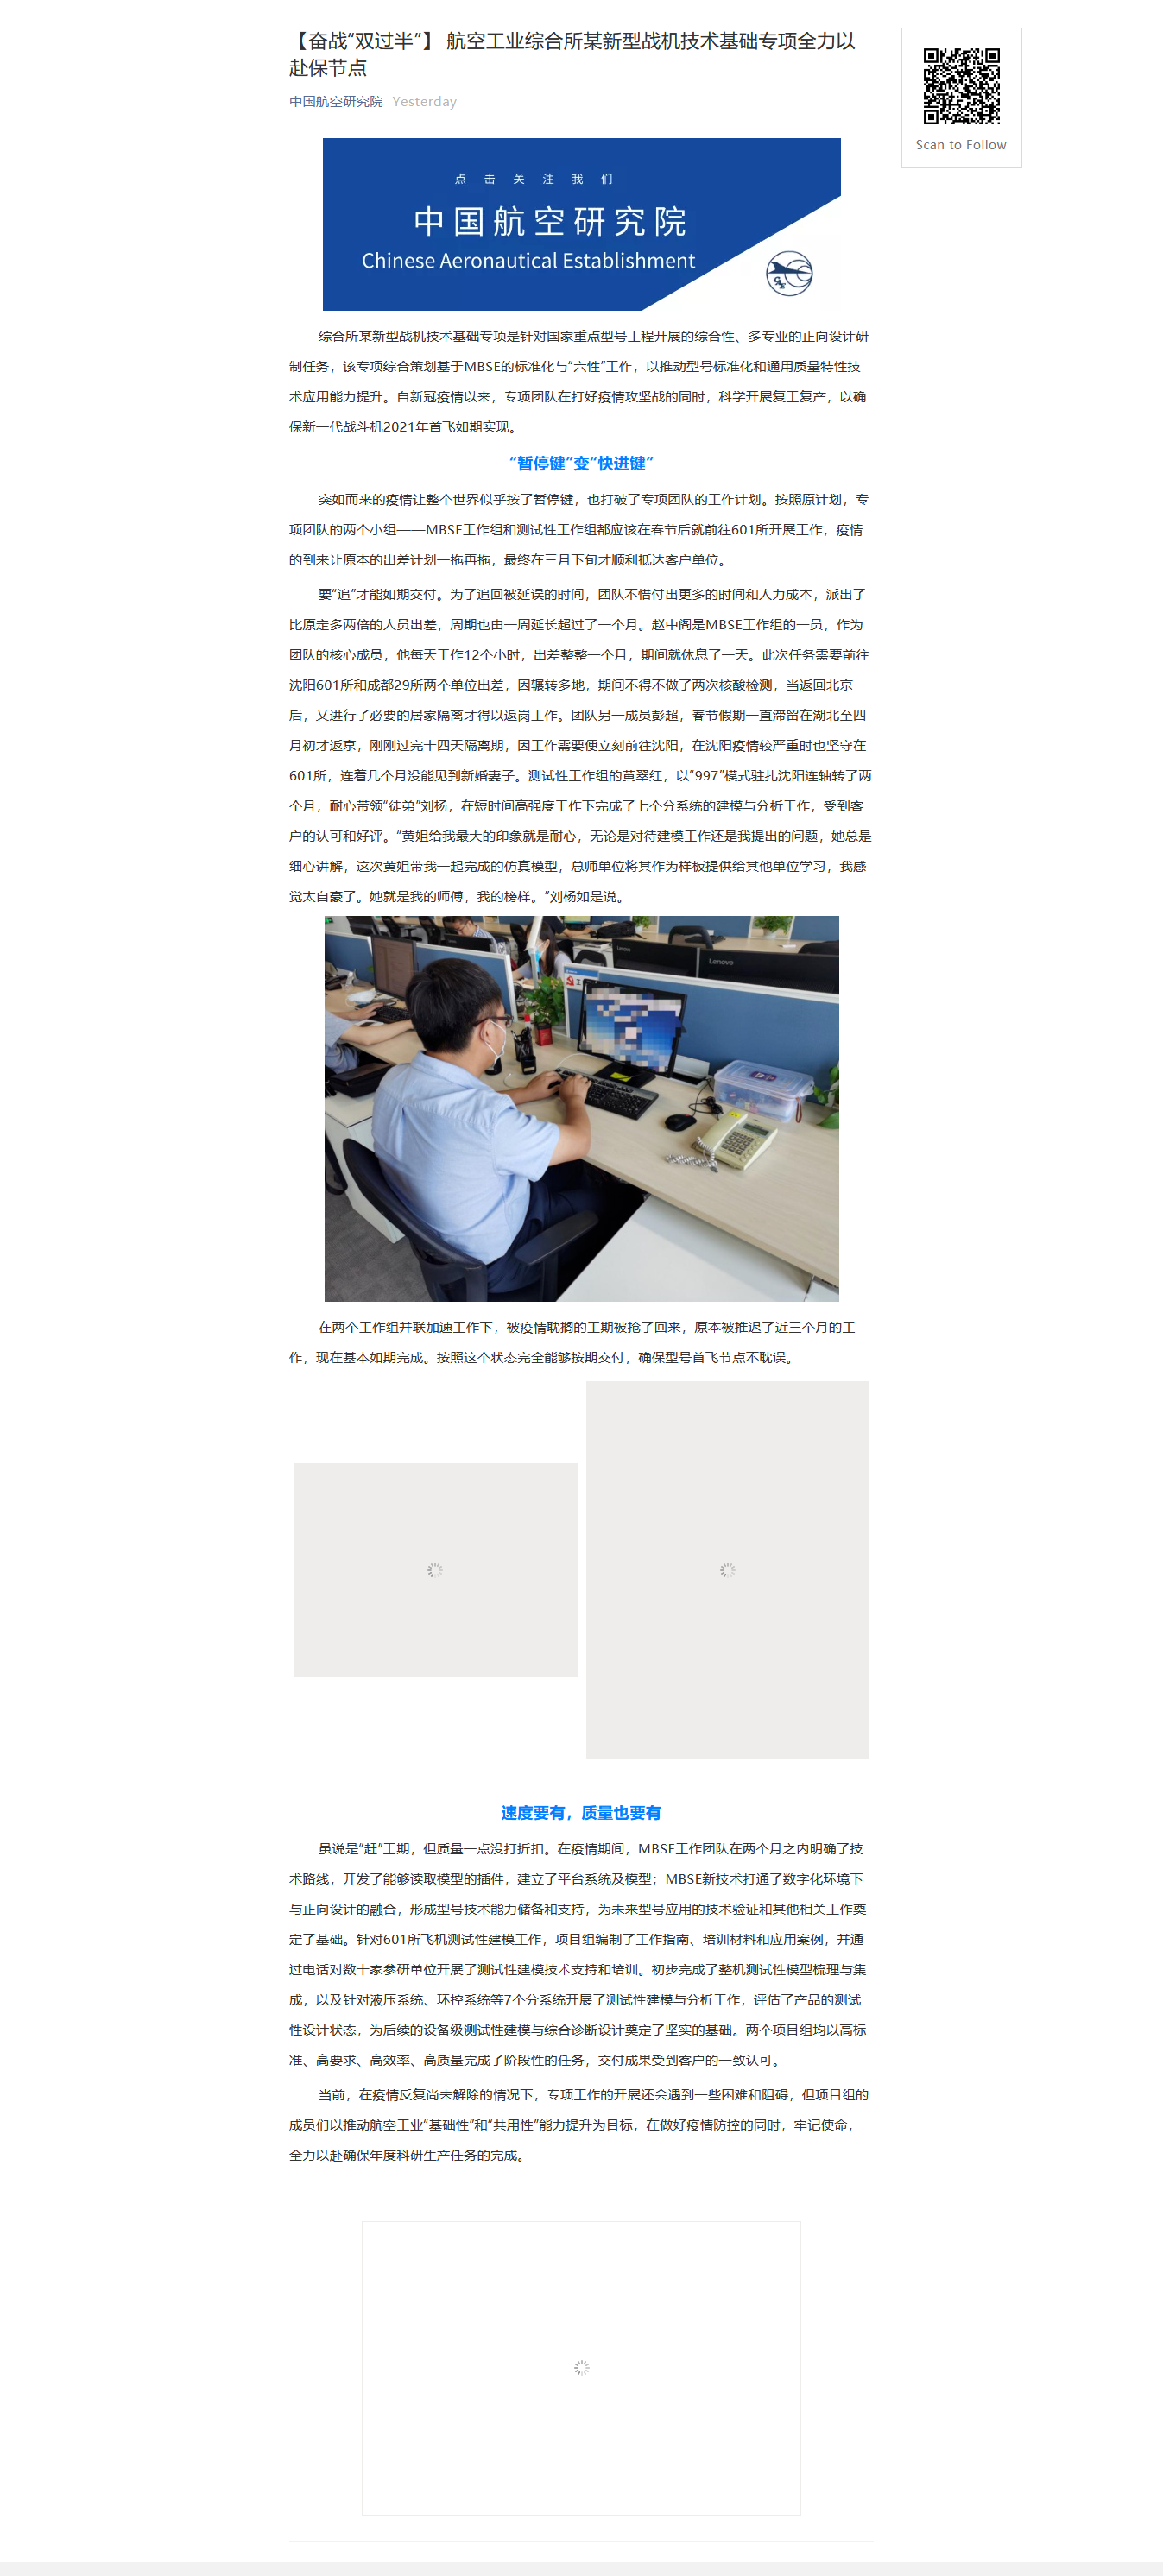 Screenshot_2020-06-30-【奋战“双过半”】-航空工业综合所某新型战机技术基础专项全力以赴保节点1.png